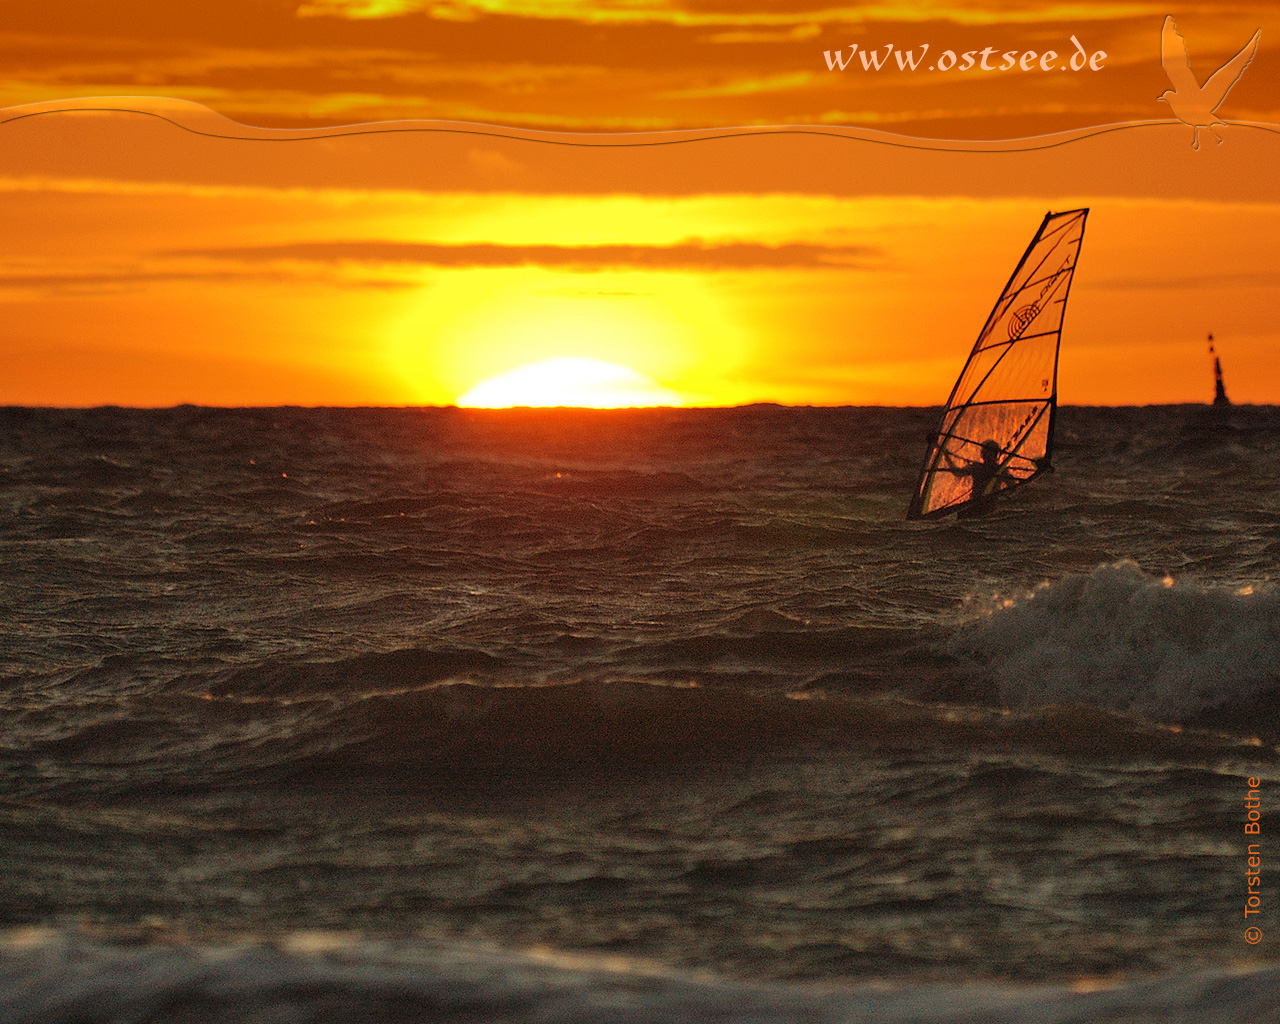 Hintergrundbild: Surfen im Sonnenuntergang